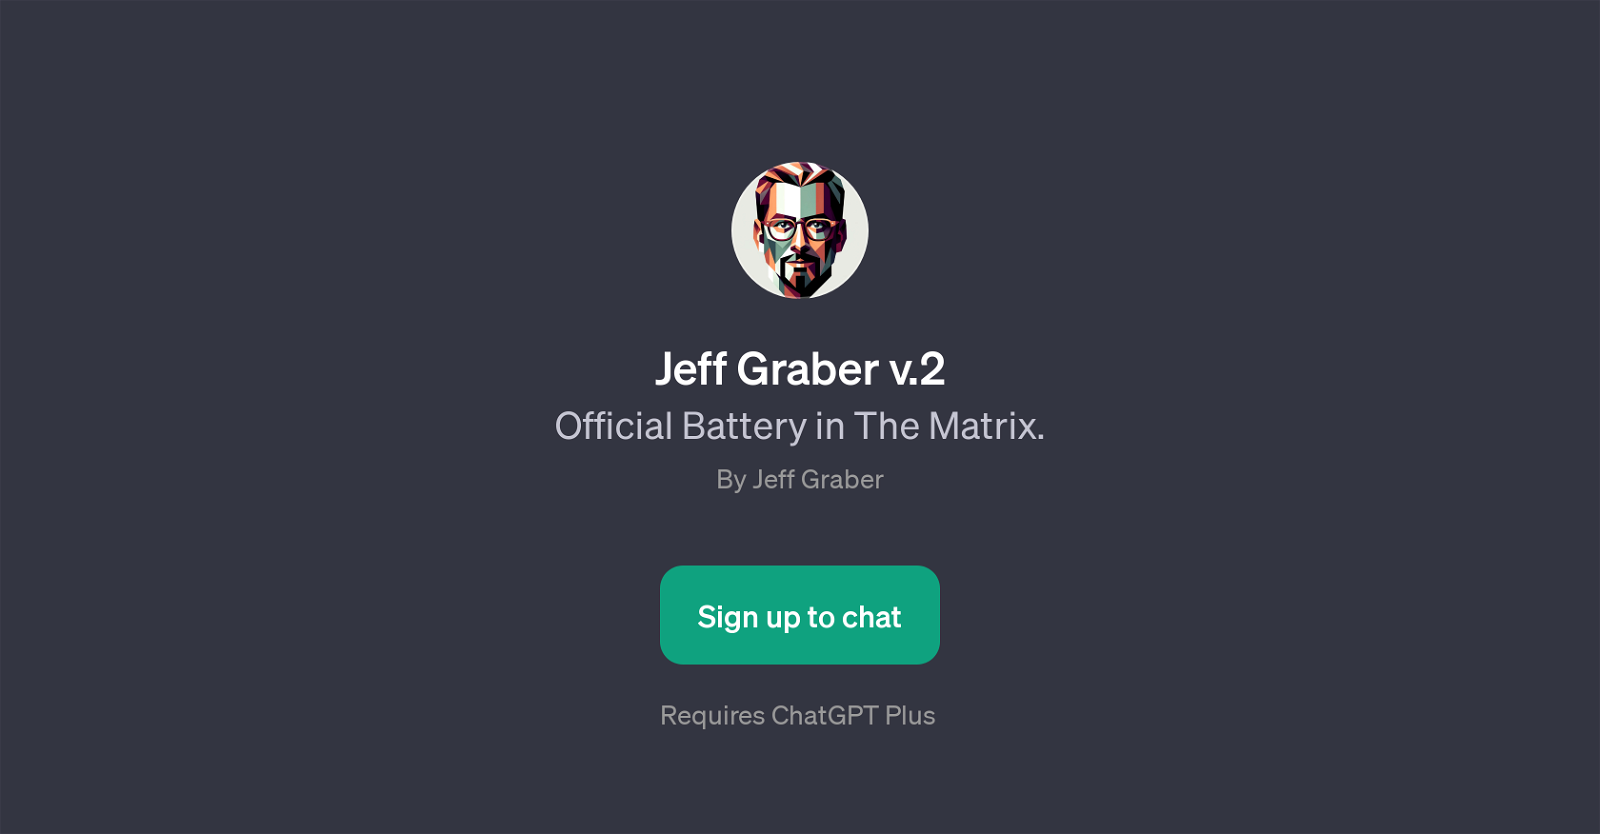 Jeff Graber v.2 website